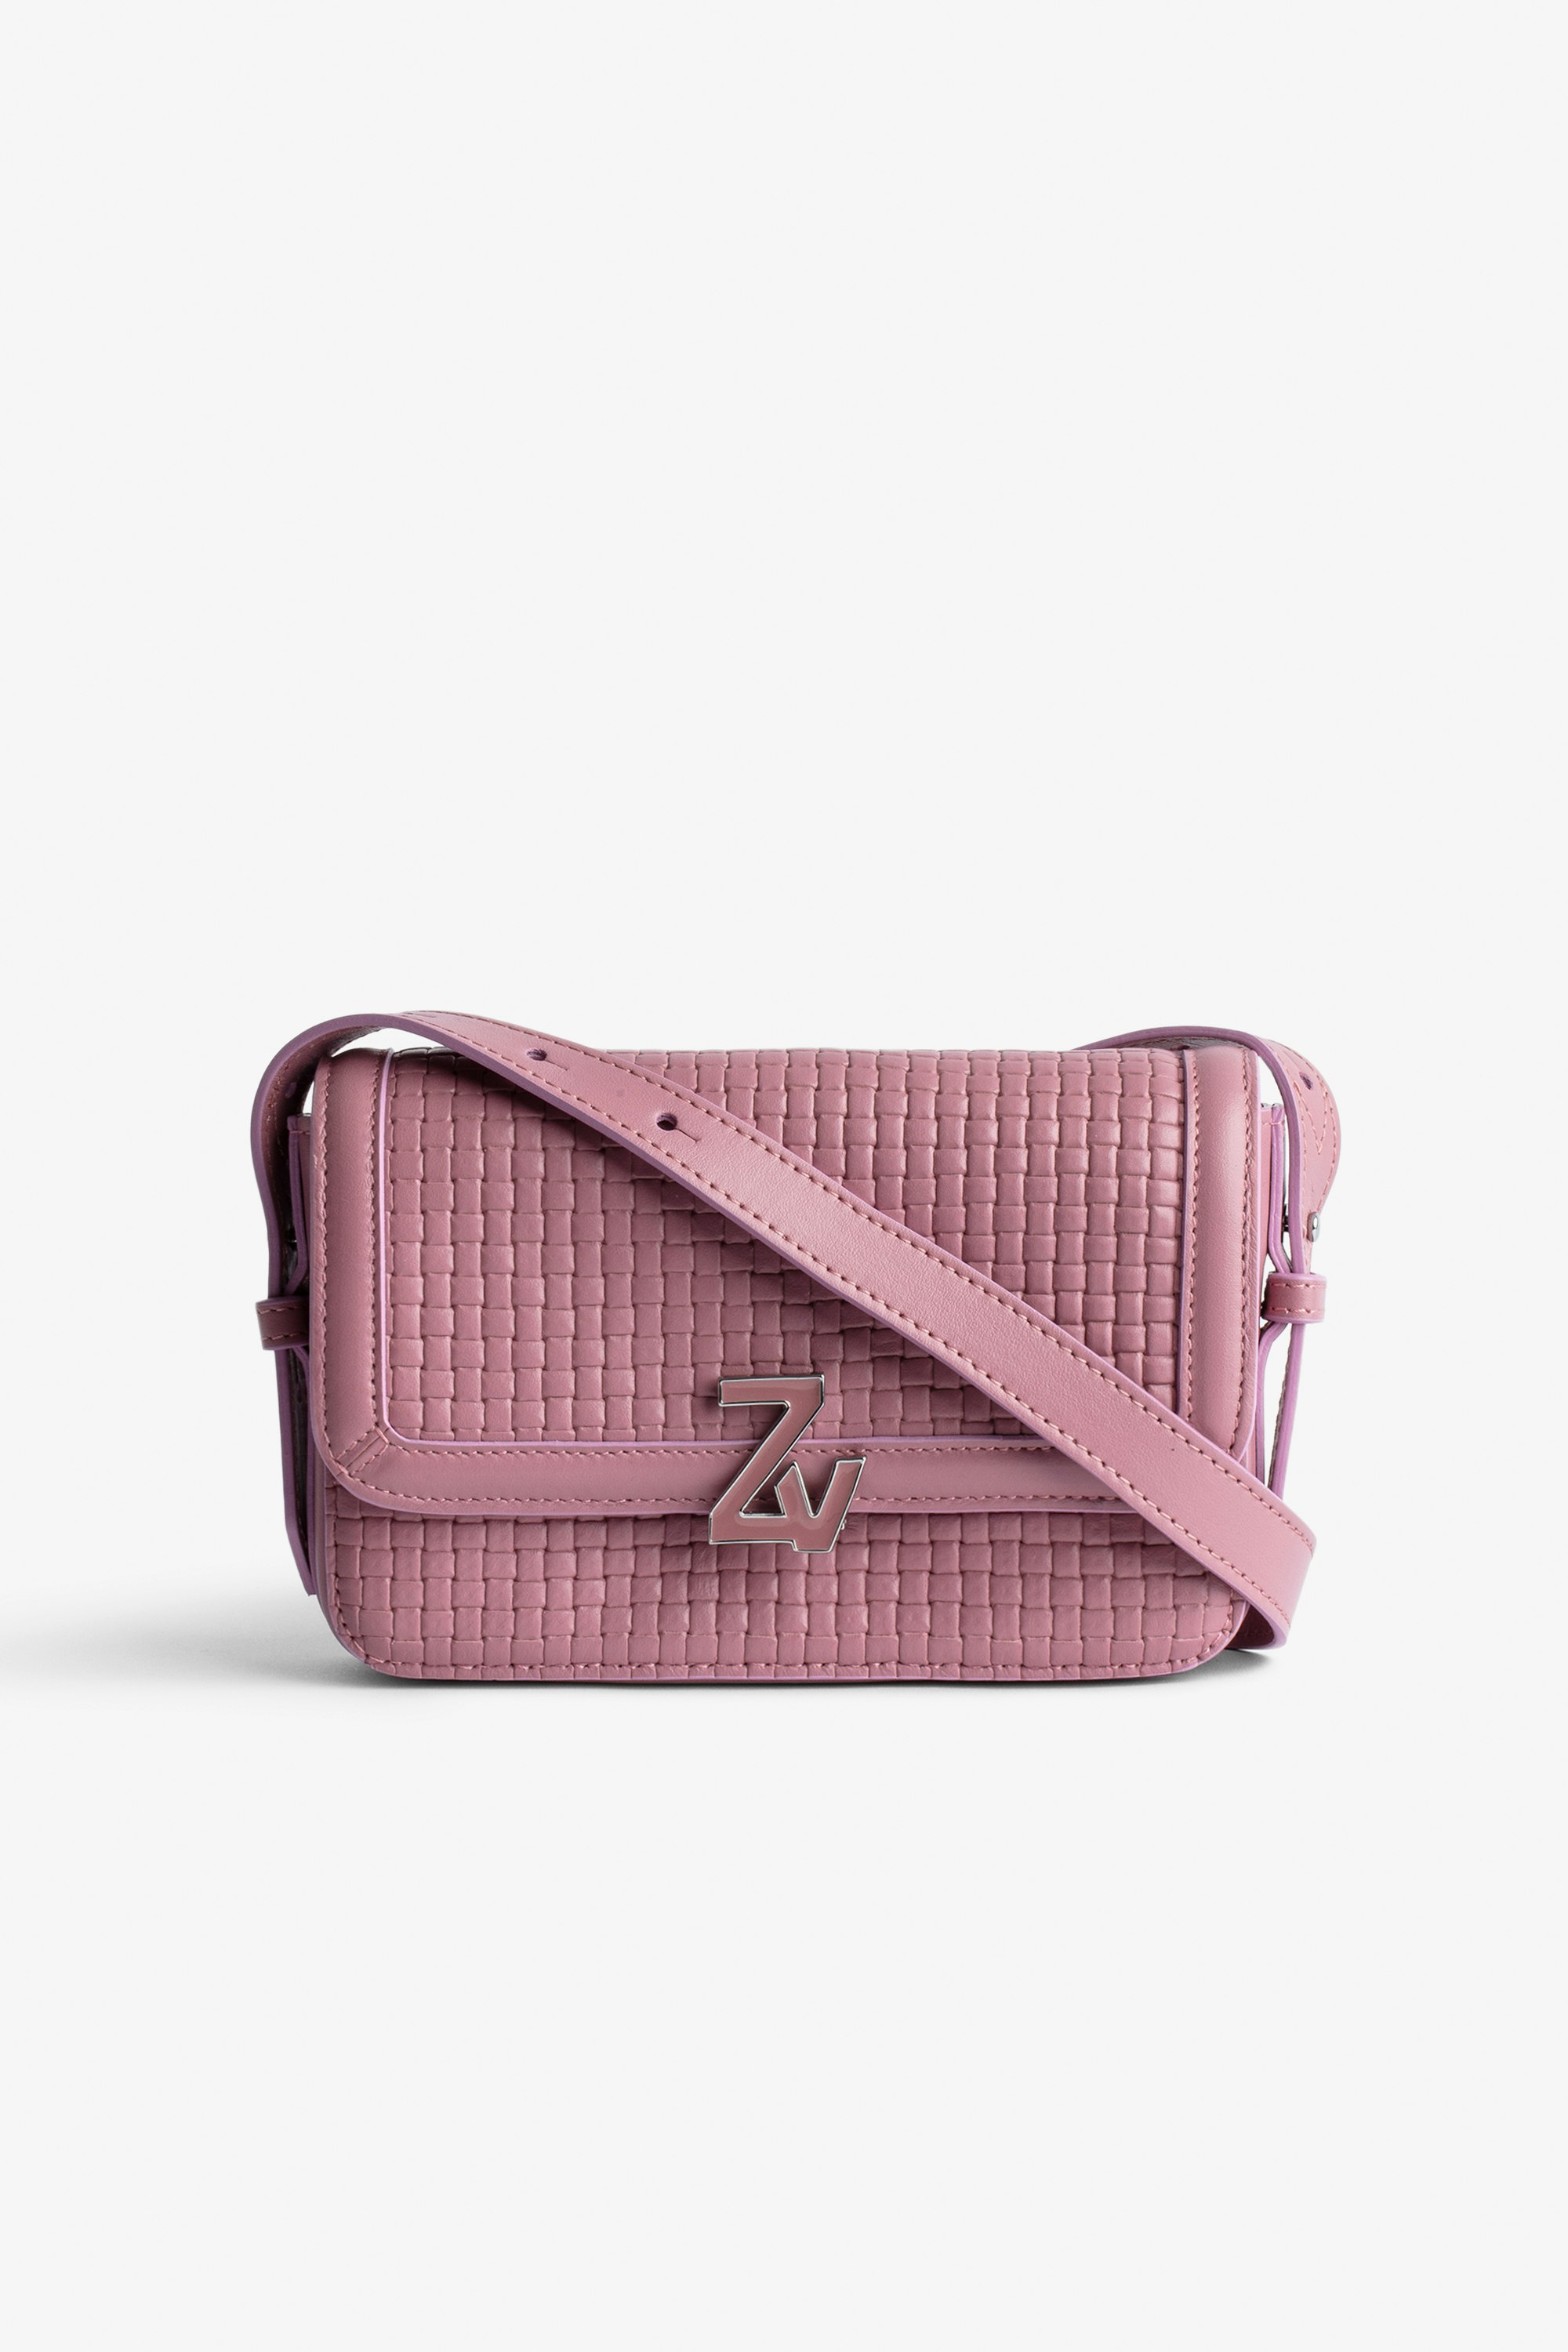 Sac ZV Initiale Le Mini  Petit sac en cuir tressé rose à bandoulière orné d'un fermoir ZV Femme